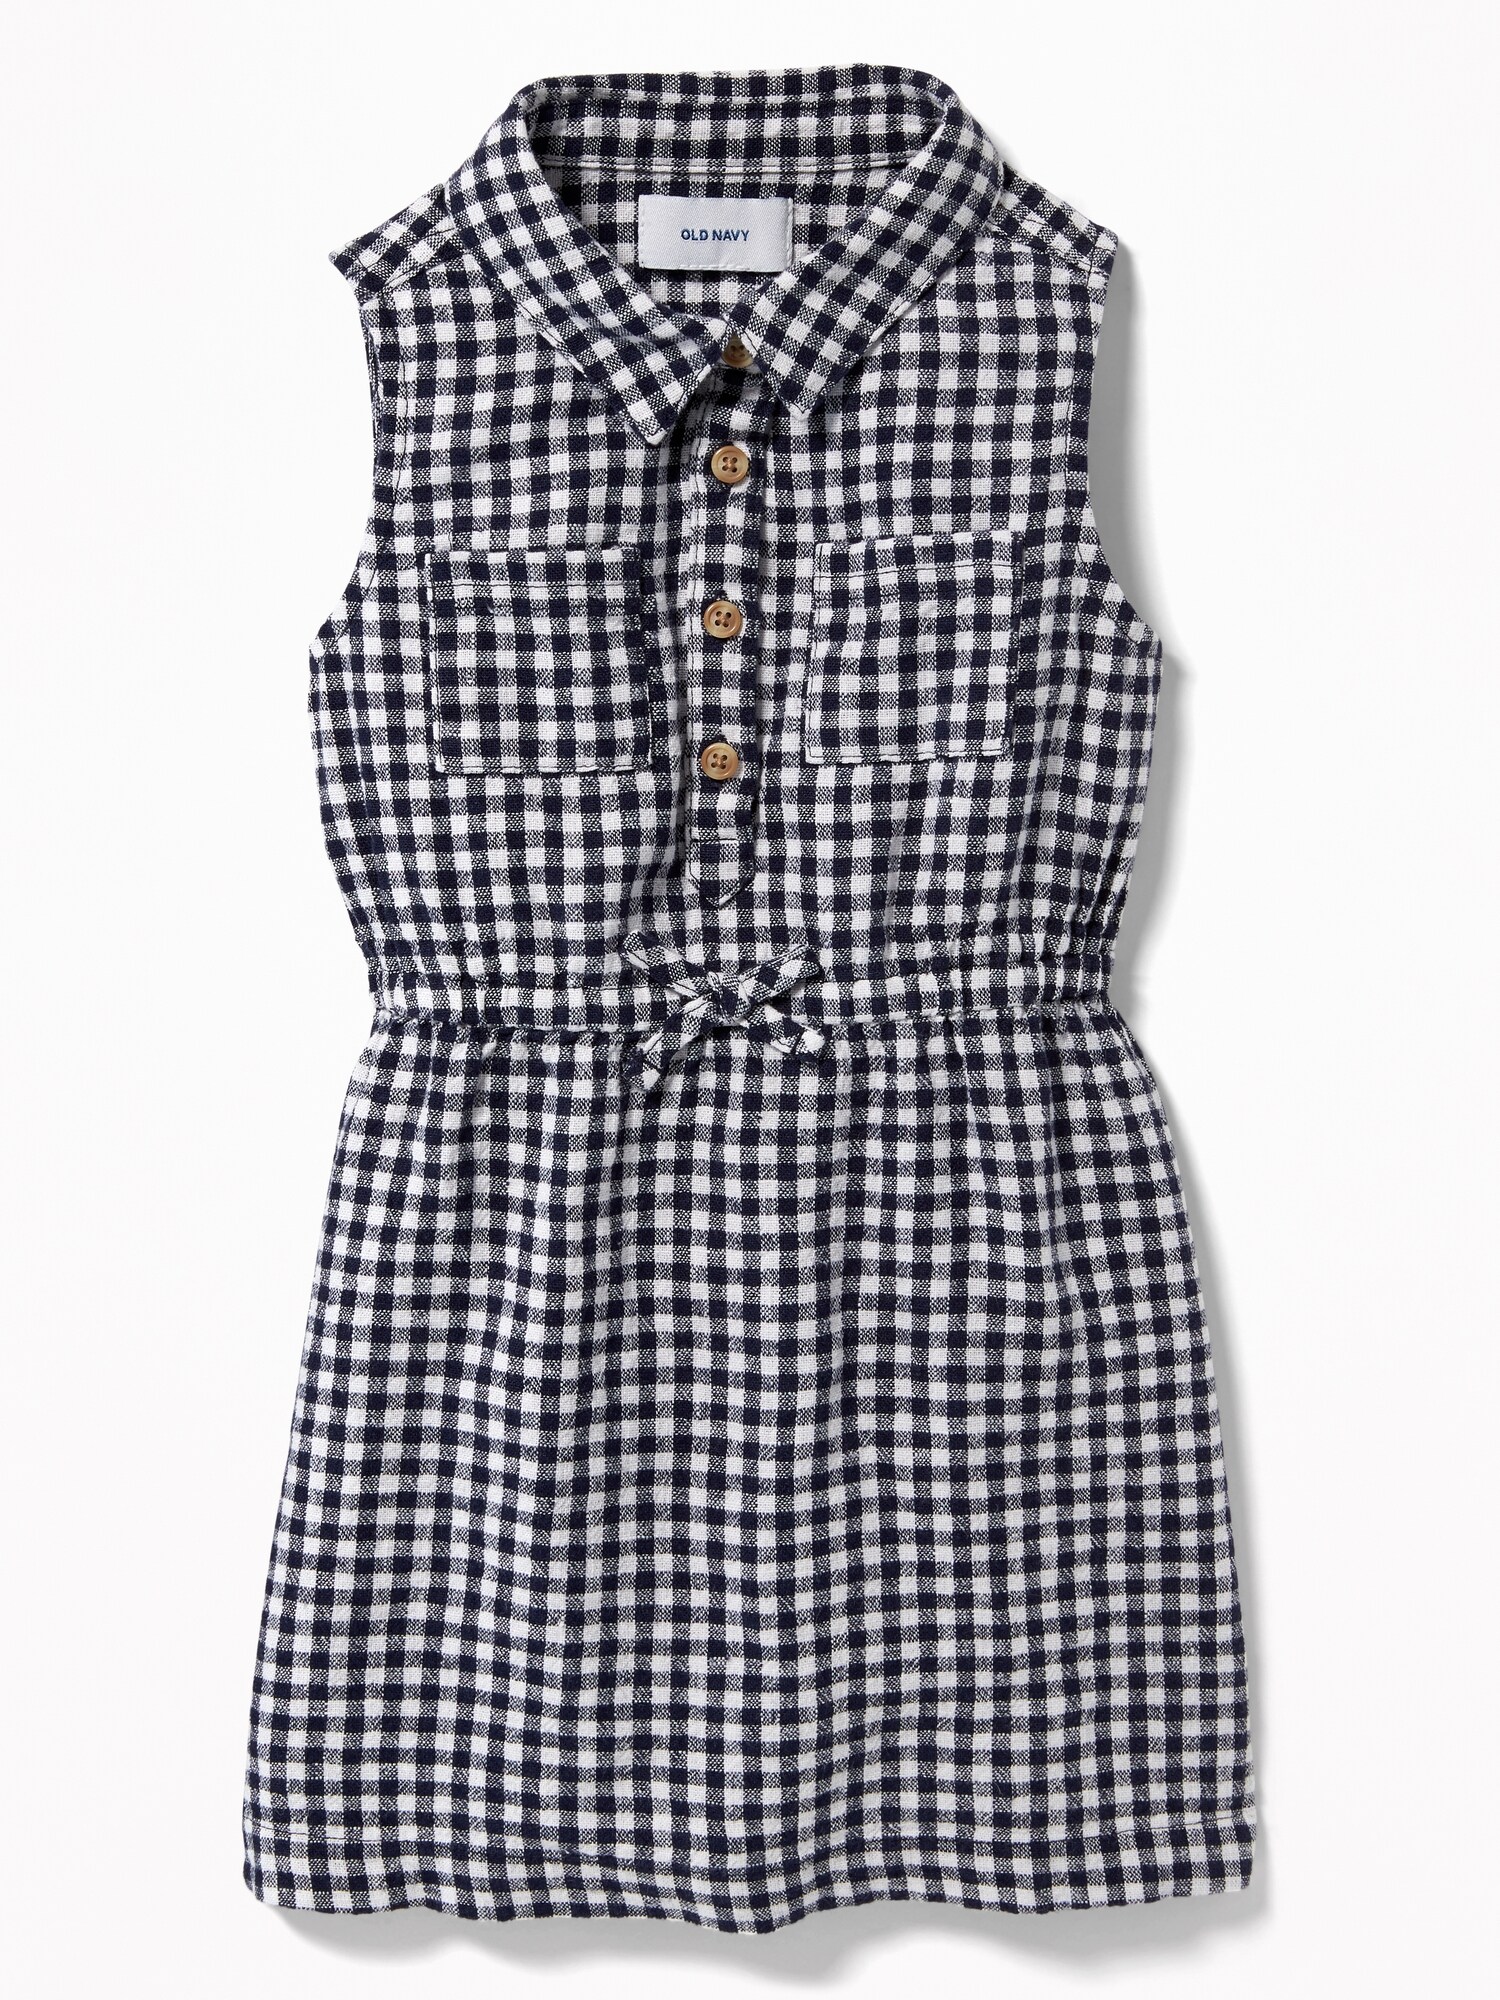 Sleeveless Gingham Shirt Dress for Toddler Girls | Old Navy